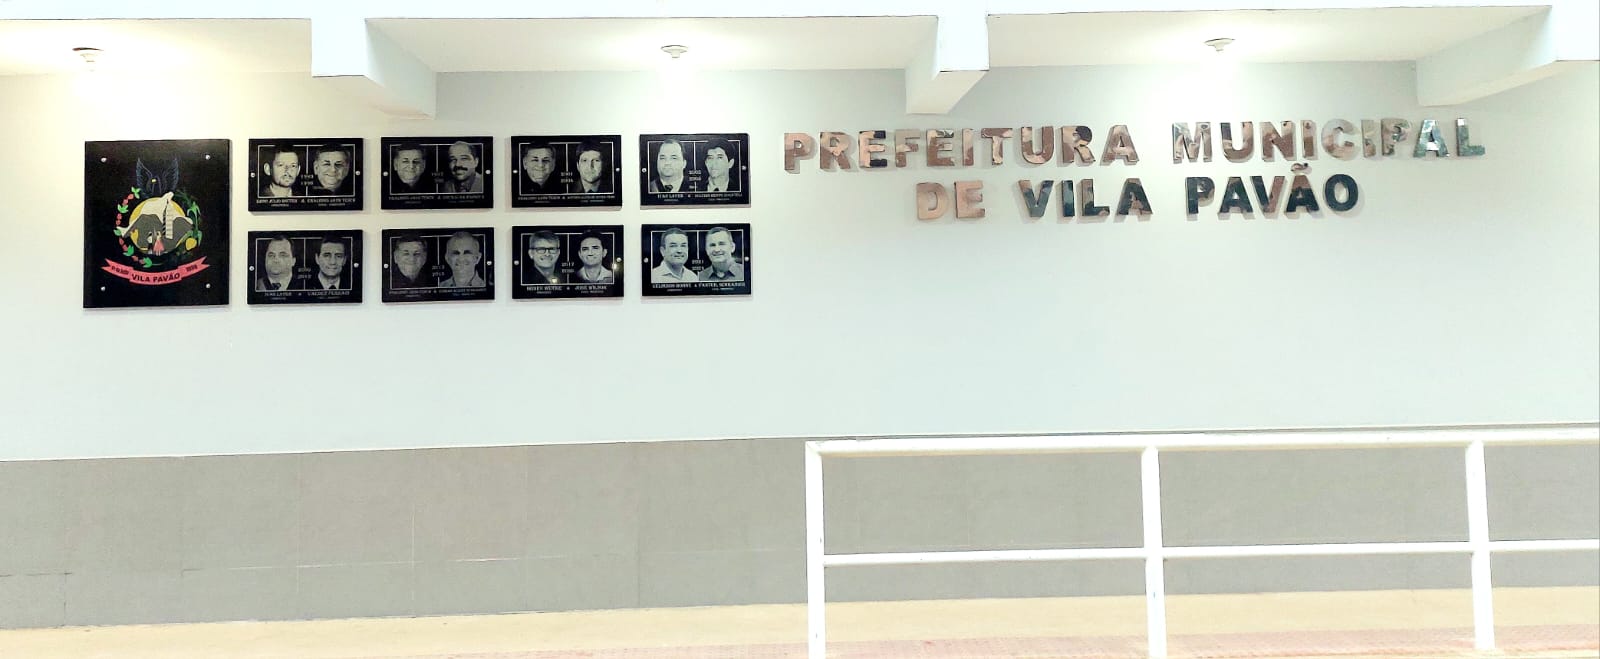 Galeria está instalada na fachada da sede da Prefeitura Municipal